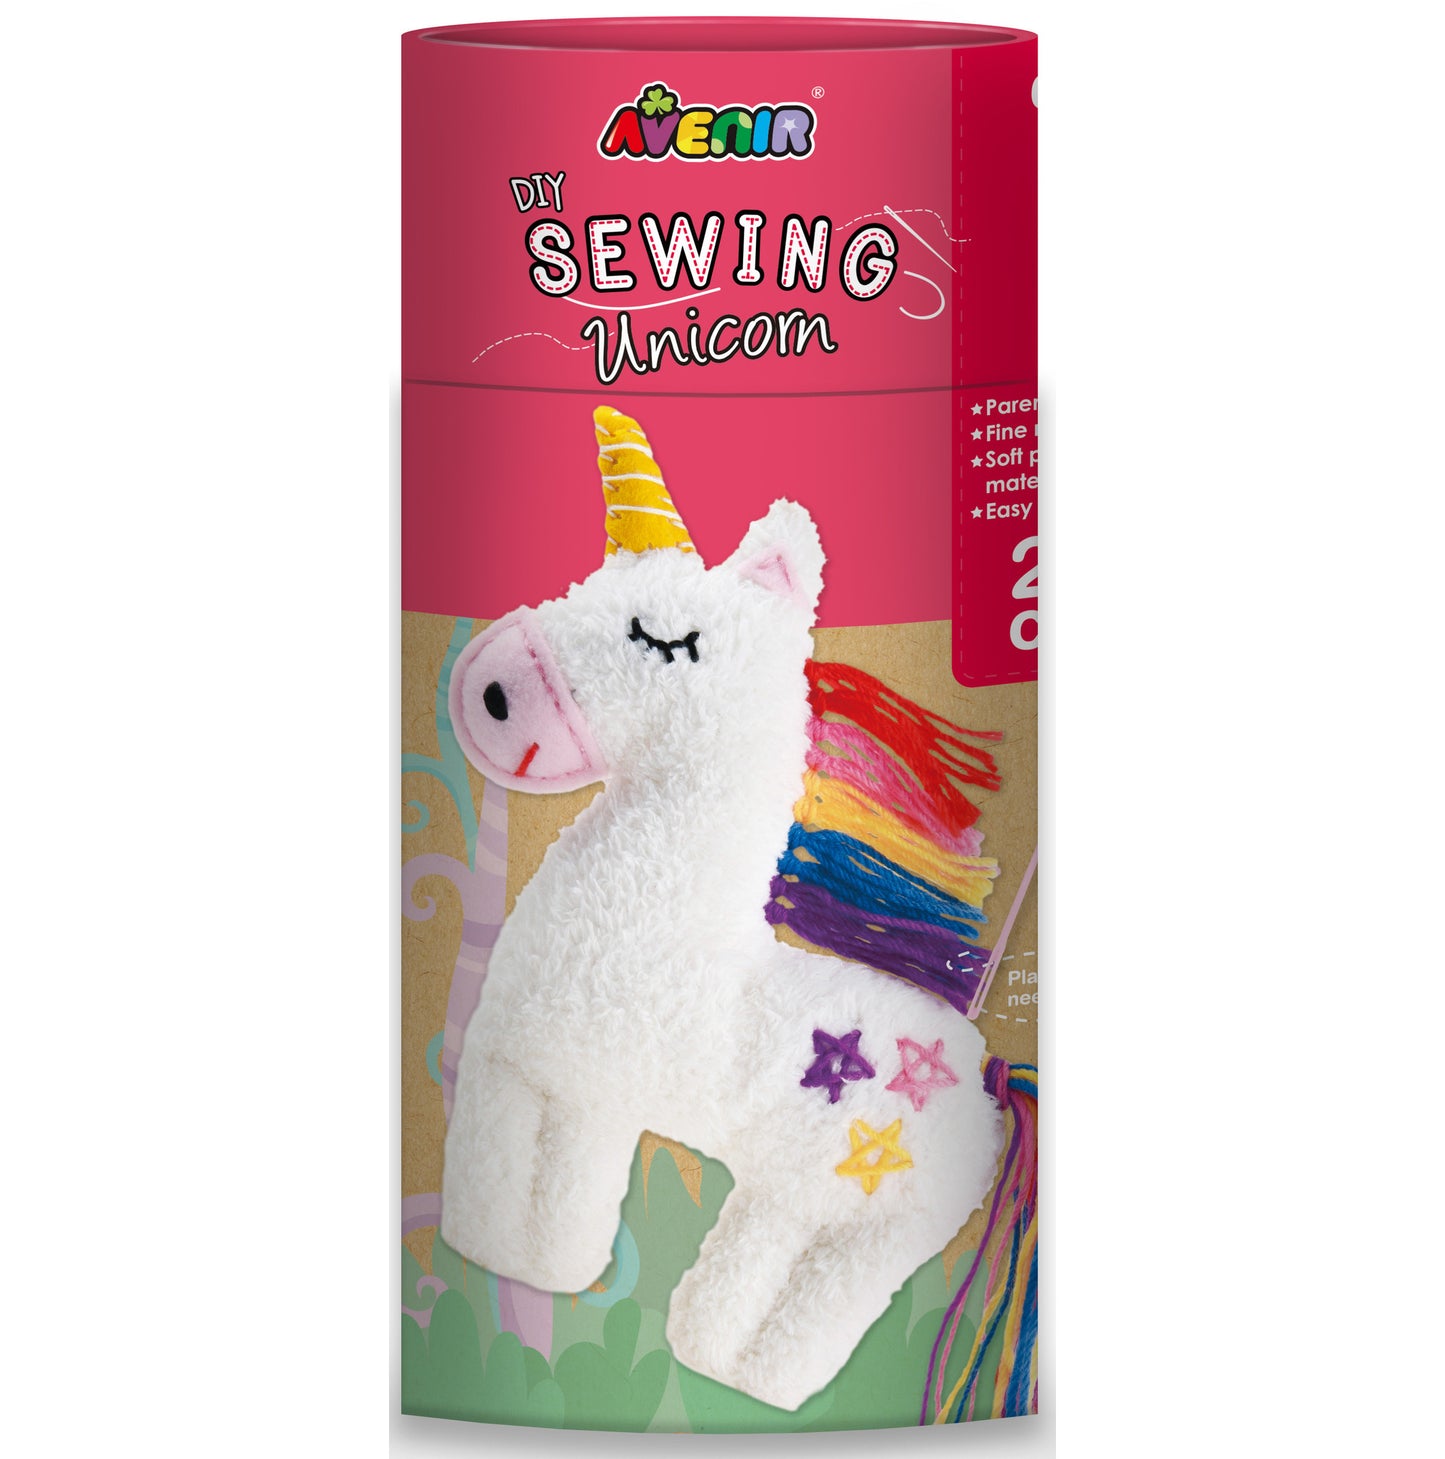 Sewing Doll Unicorn